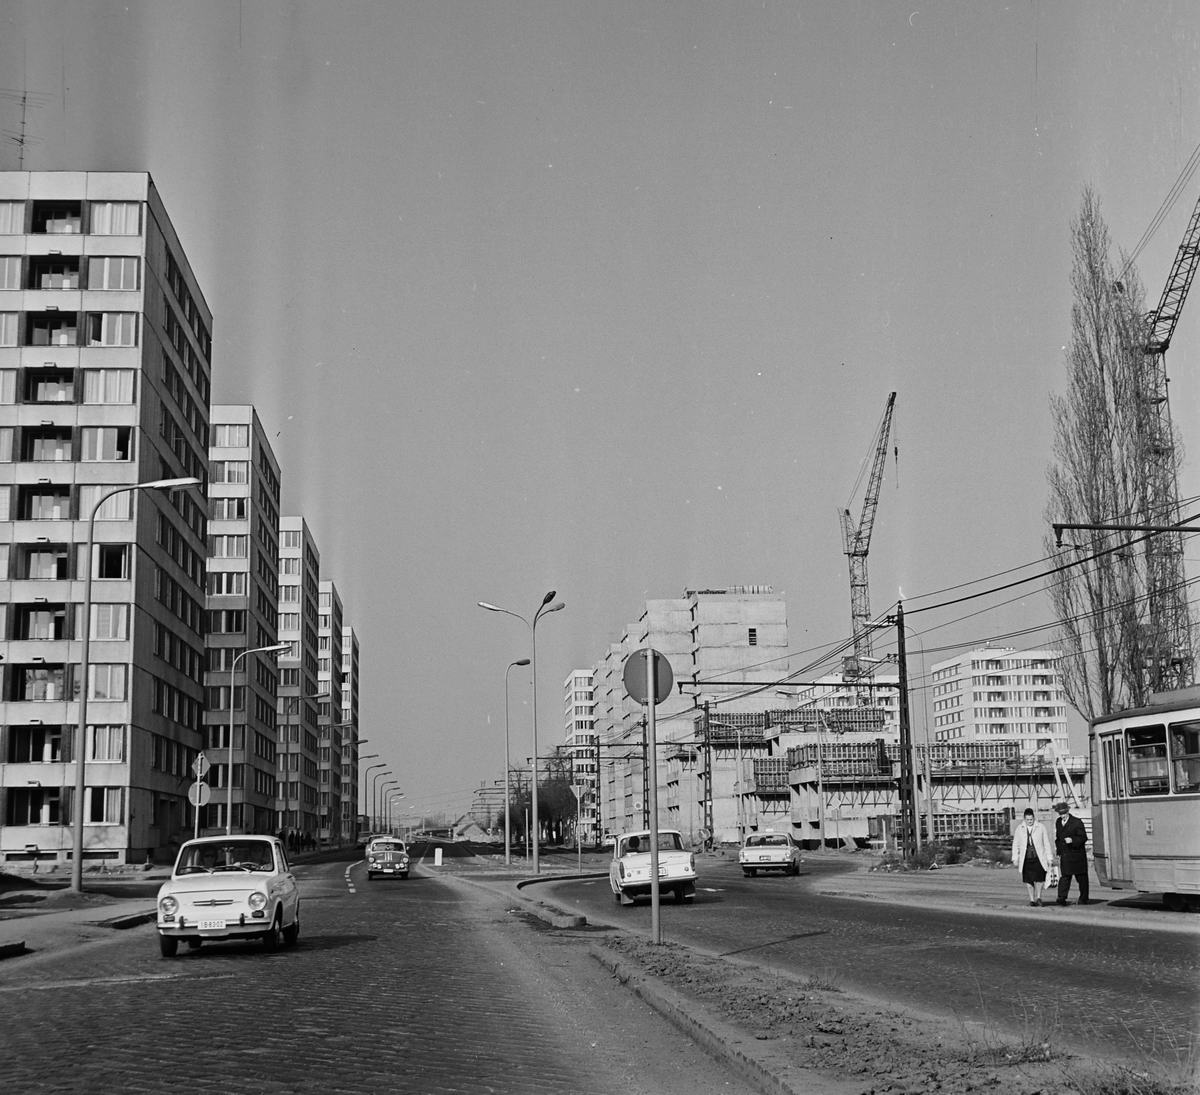 Budafokon az 1970-es évek első felében épült fel a lakótelep